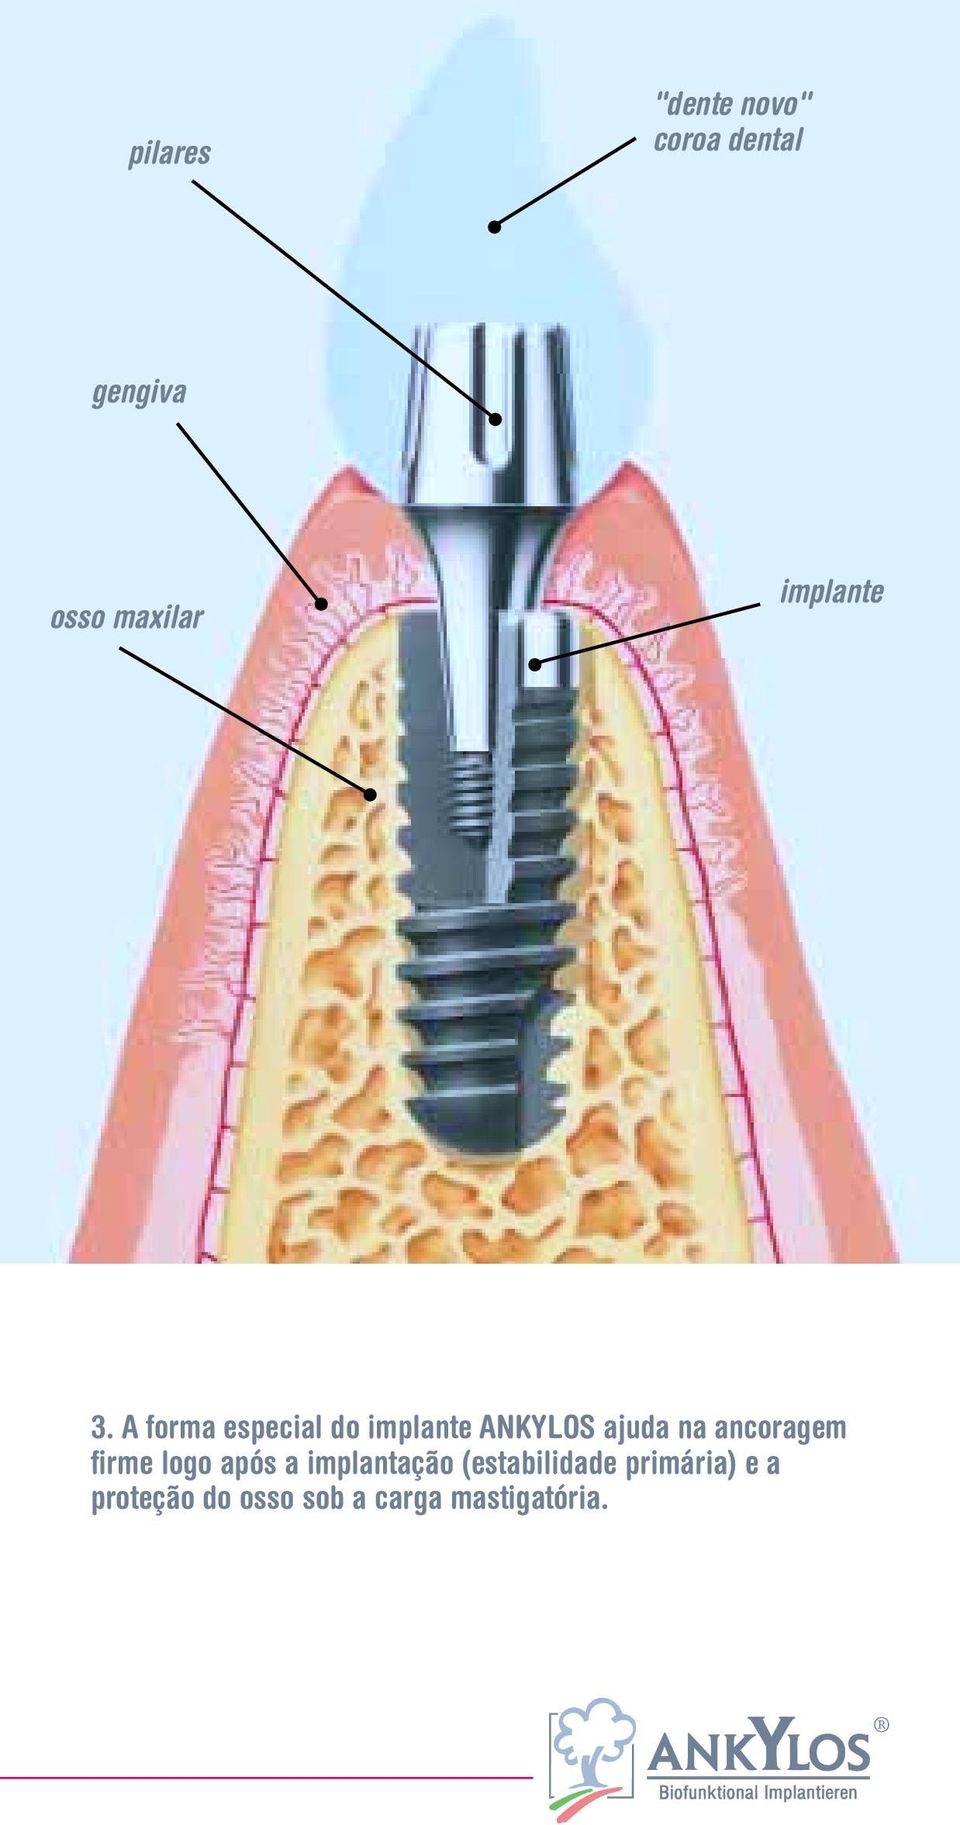 A forma especial do implante ANKYLOS ajuda na ancoragem